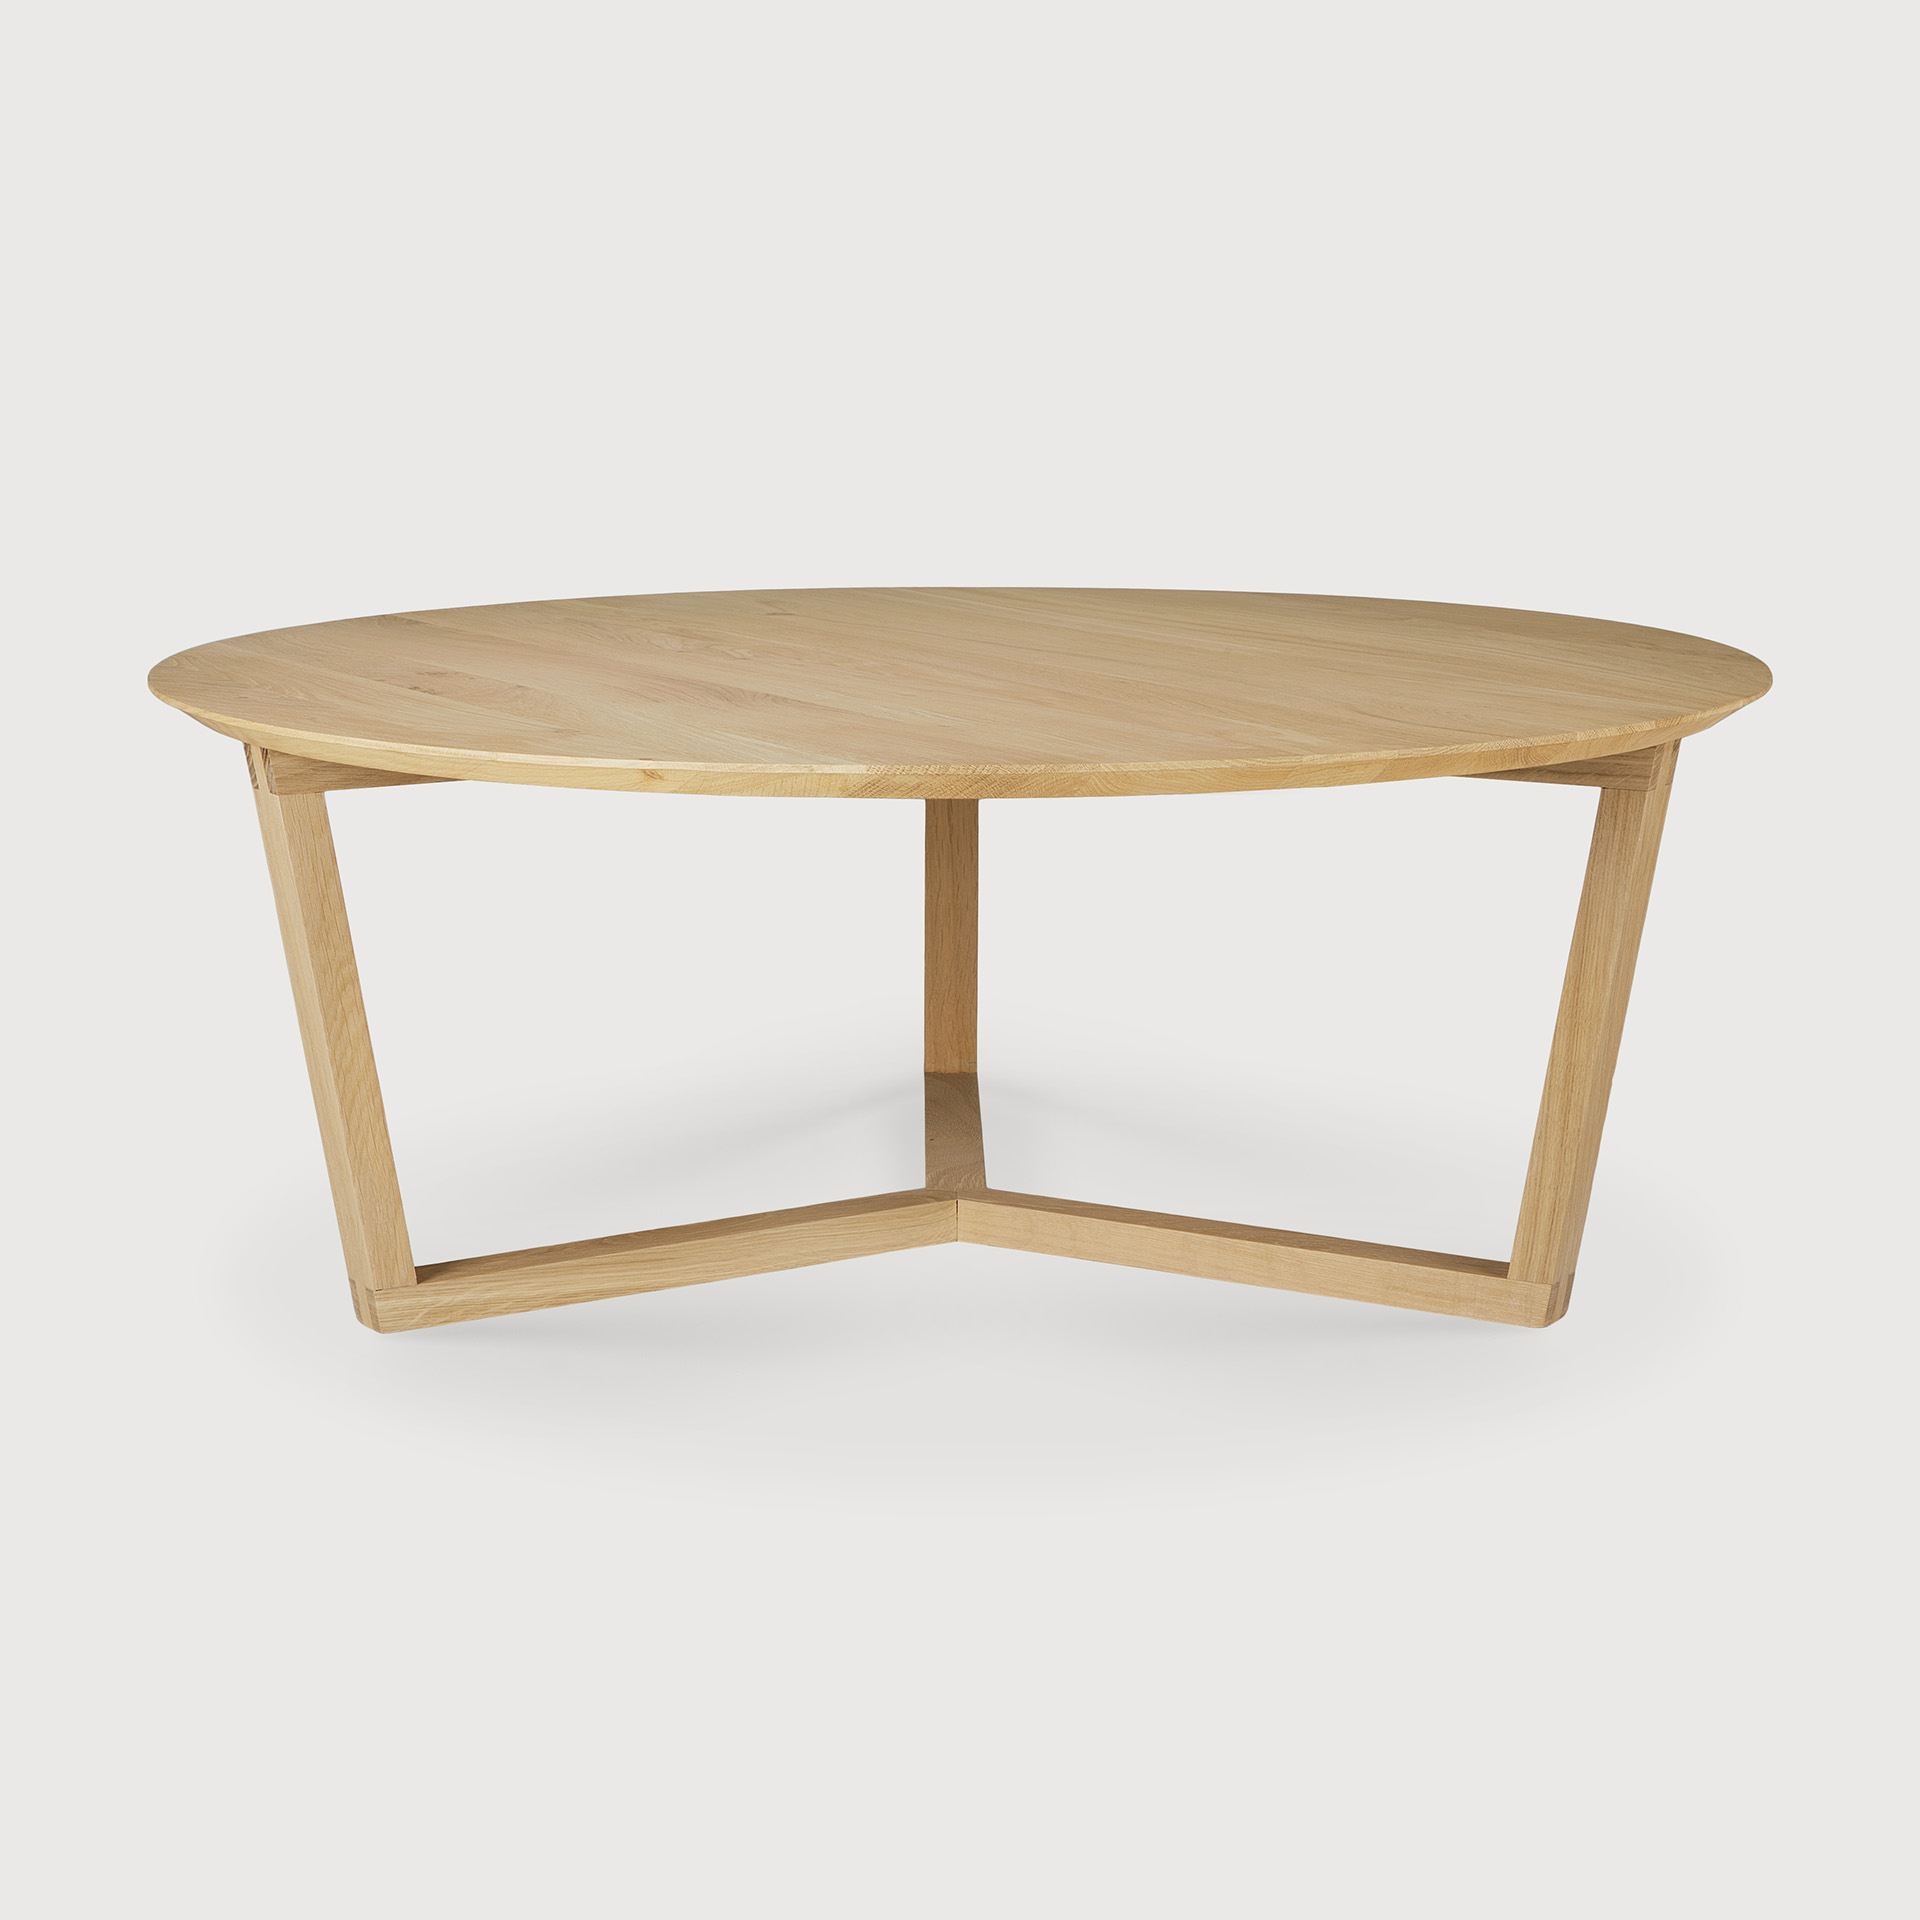 [50530*] Tripod coffee table